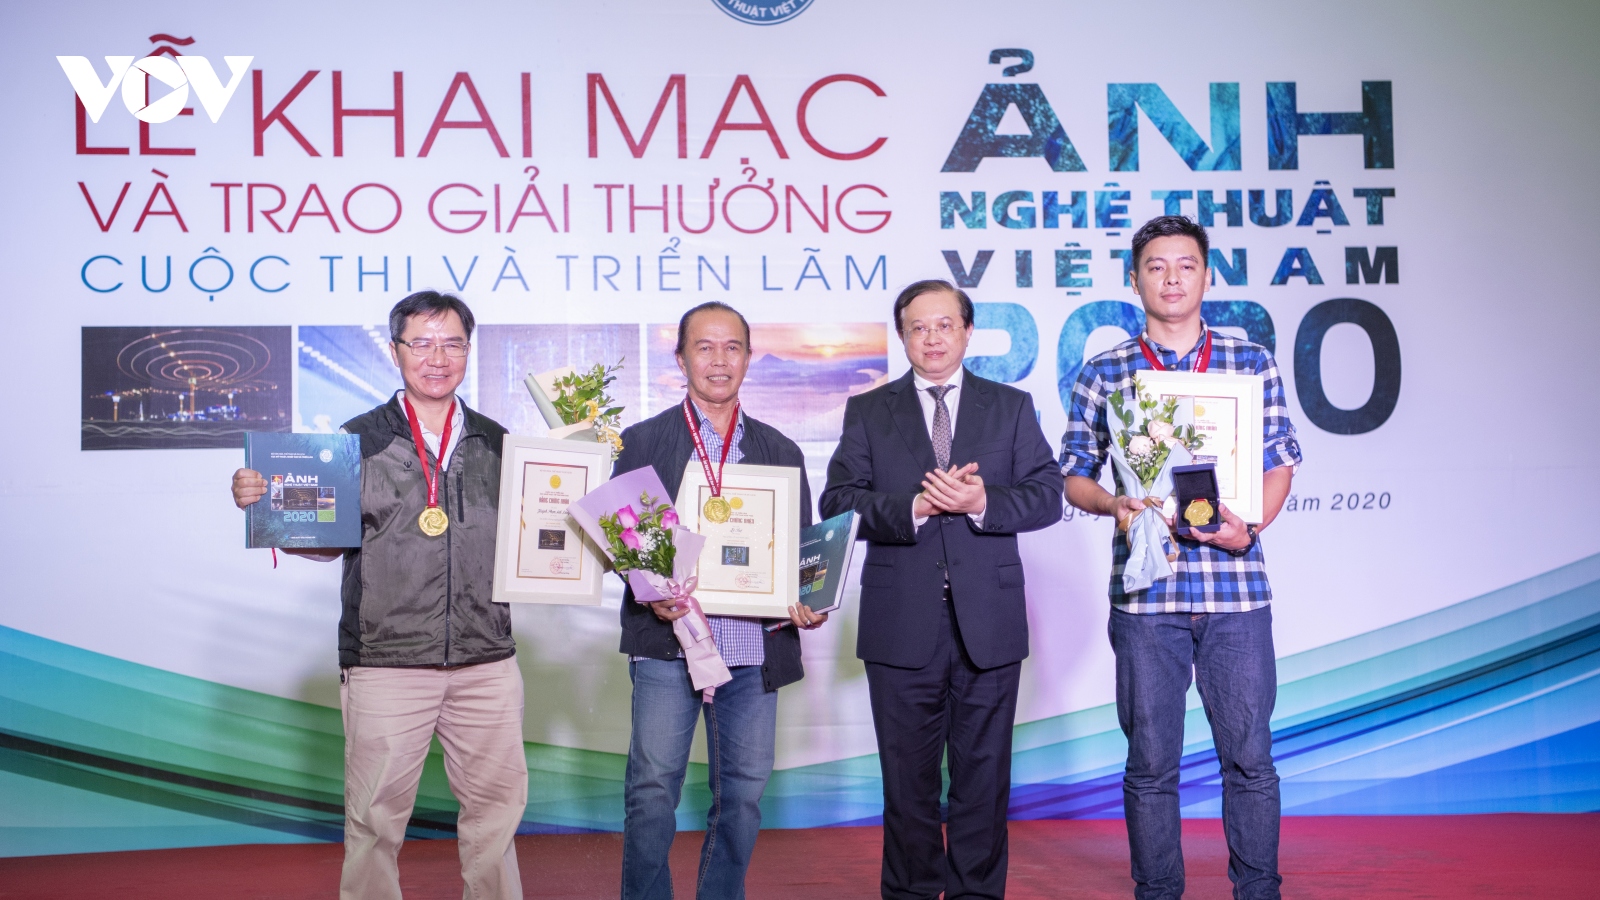 Trao giải Cuộc thi và triển lãm Ảnh nghệ thuật Việt Nam năm 2020